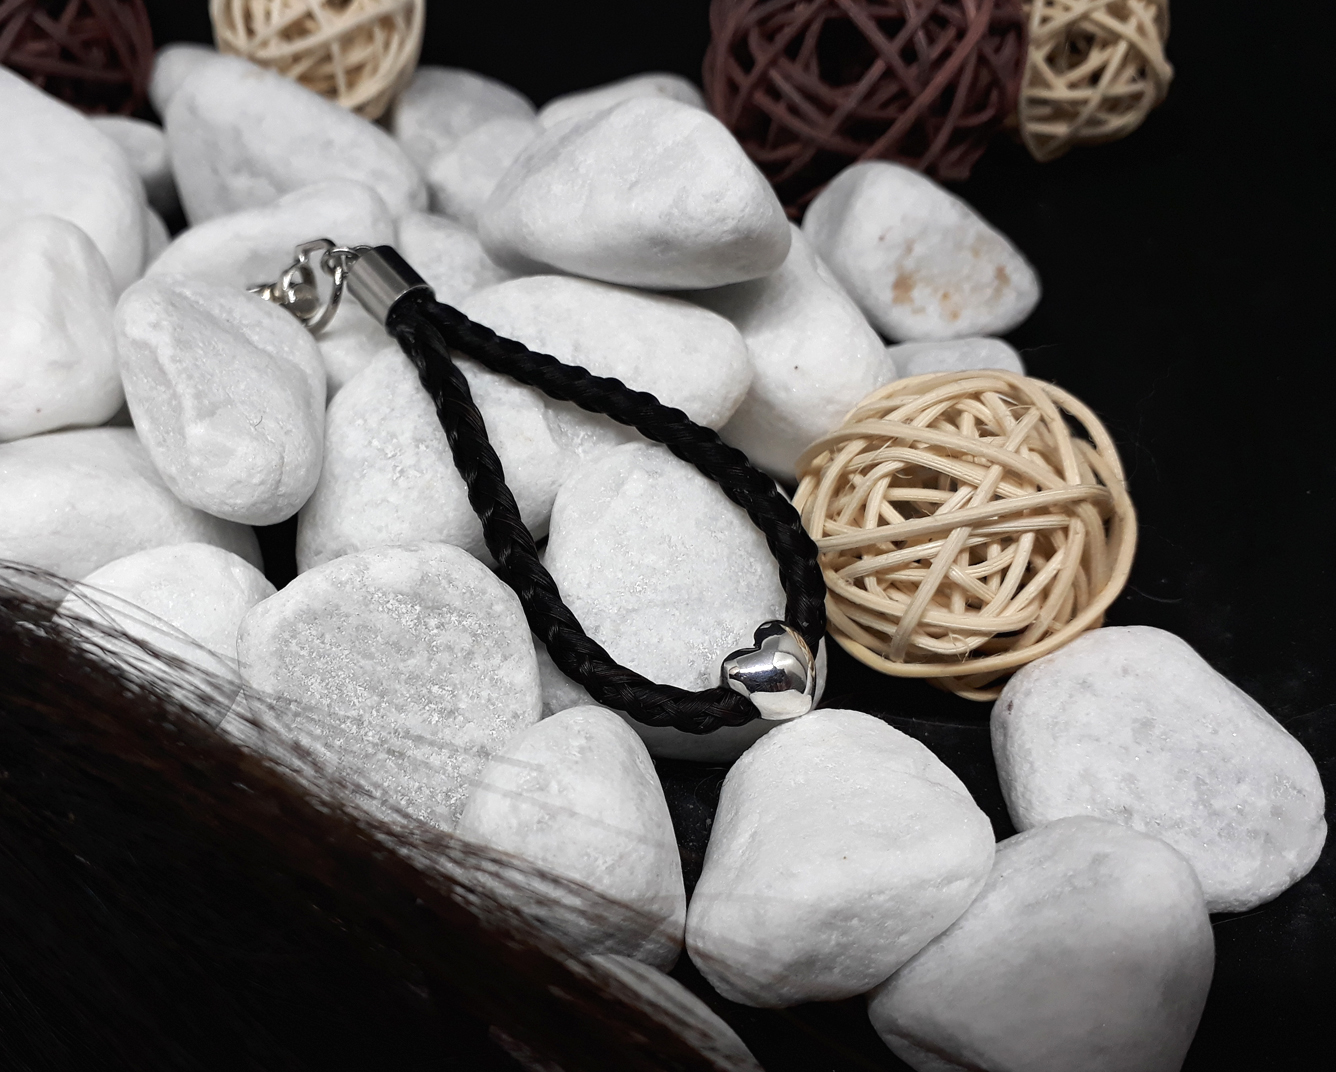 Schlüsselanhänger "Tropfen": Aus schwarzen Strängen geflochten, mit einer 925er Silber-Perle "massives Herz" und Endkappe aus Edelstahl - Preis: 50 Euro